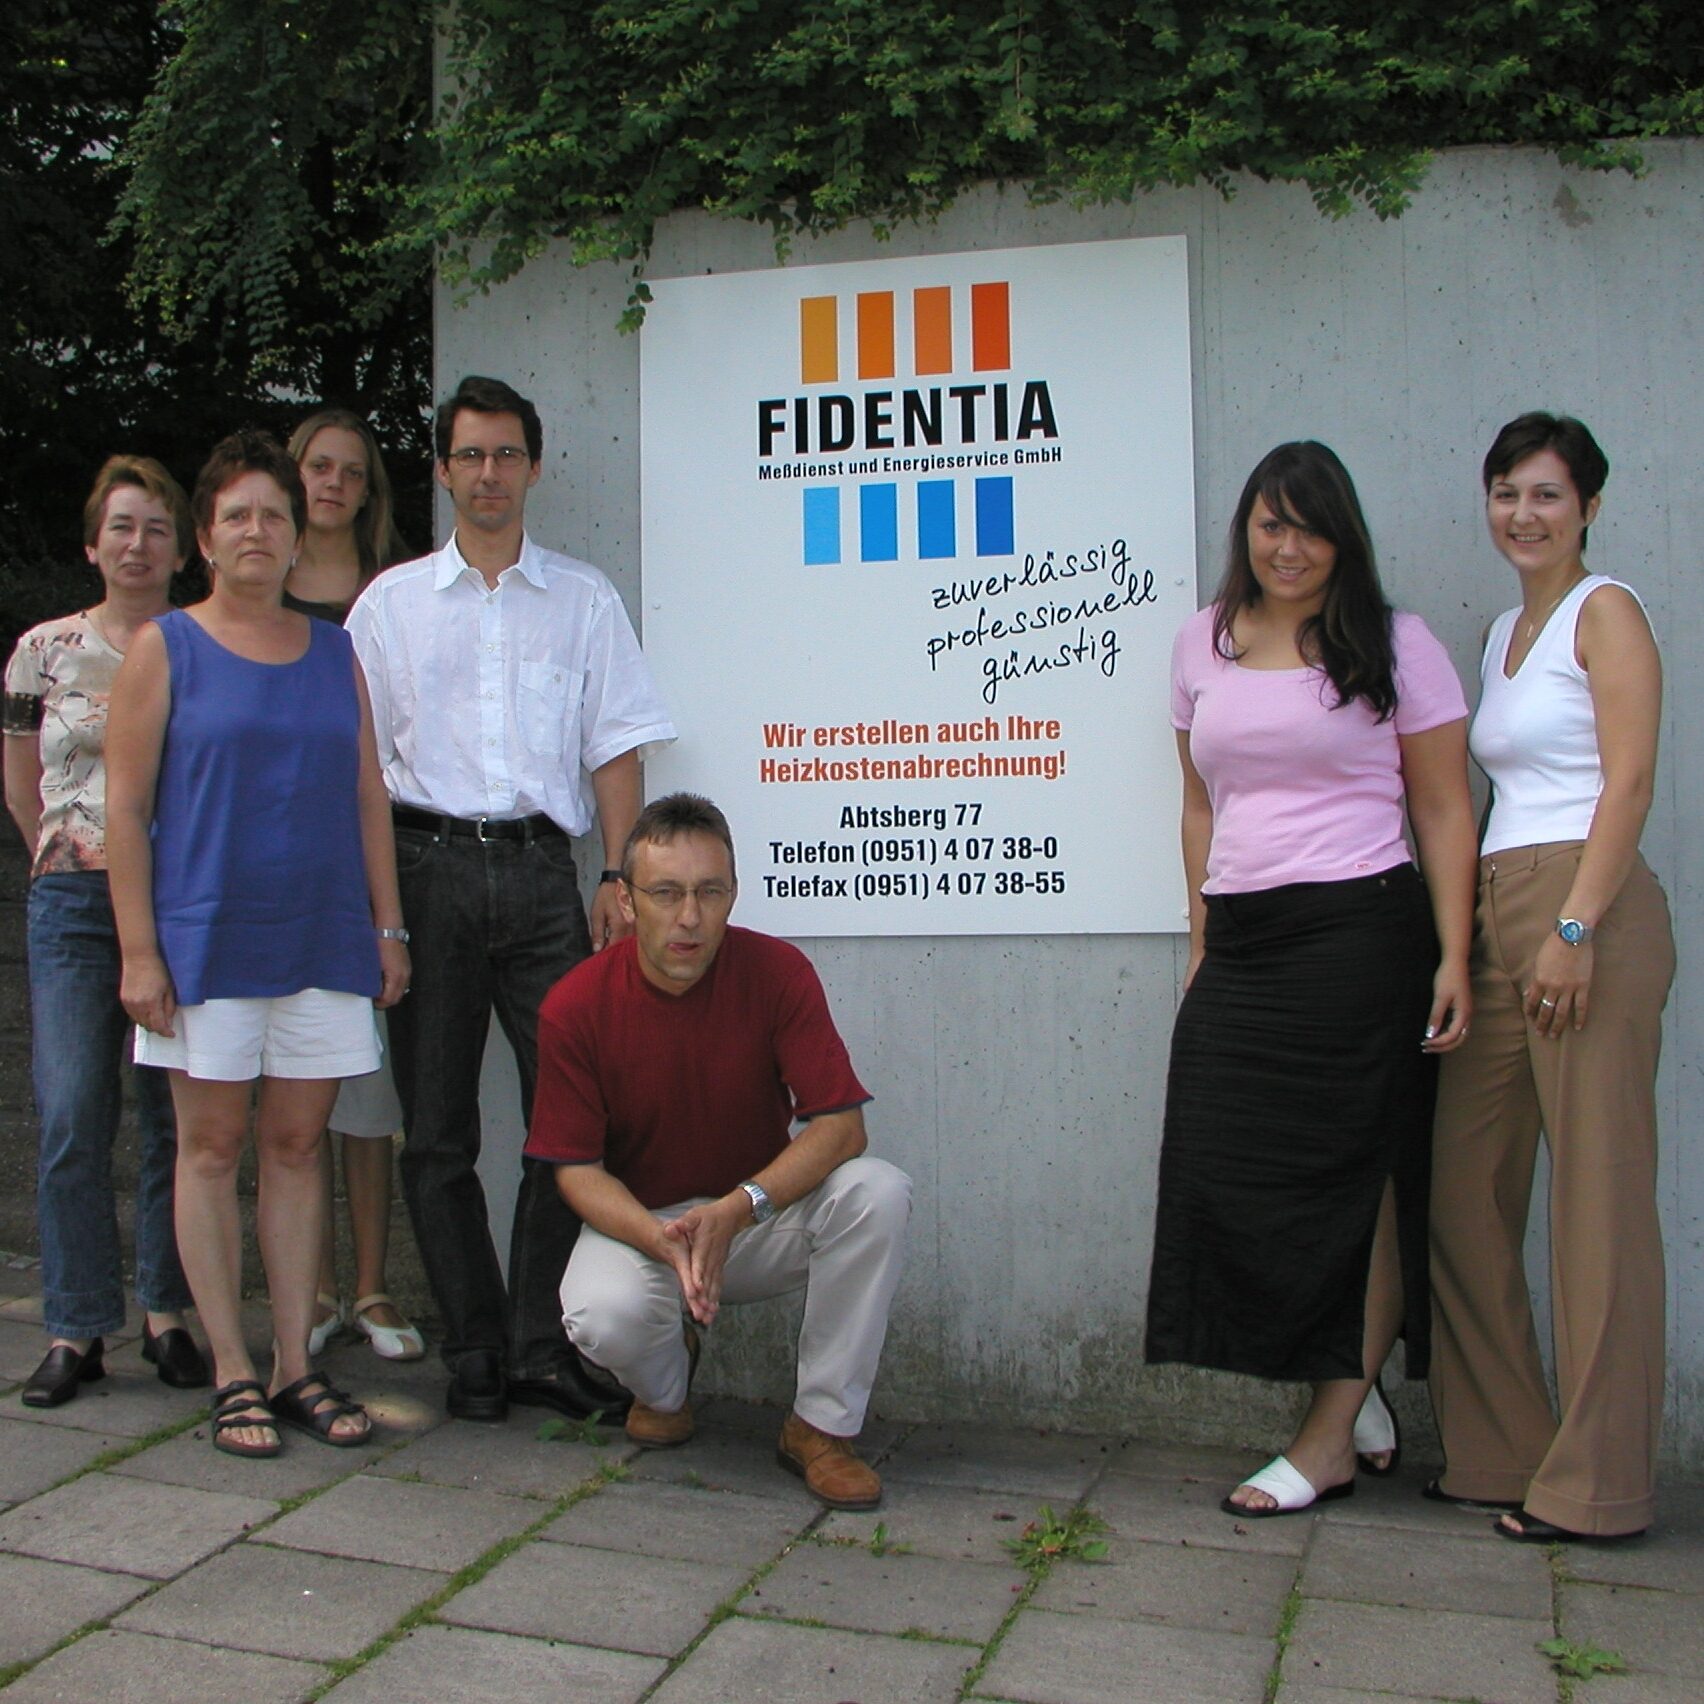 Team Fidentia